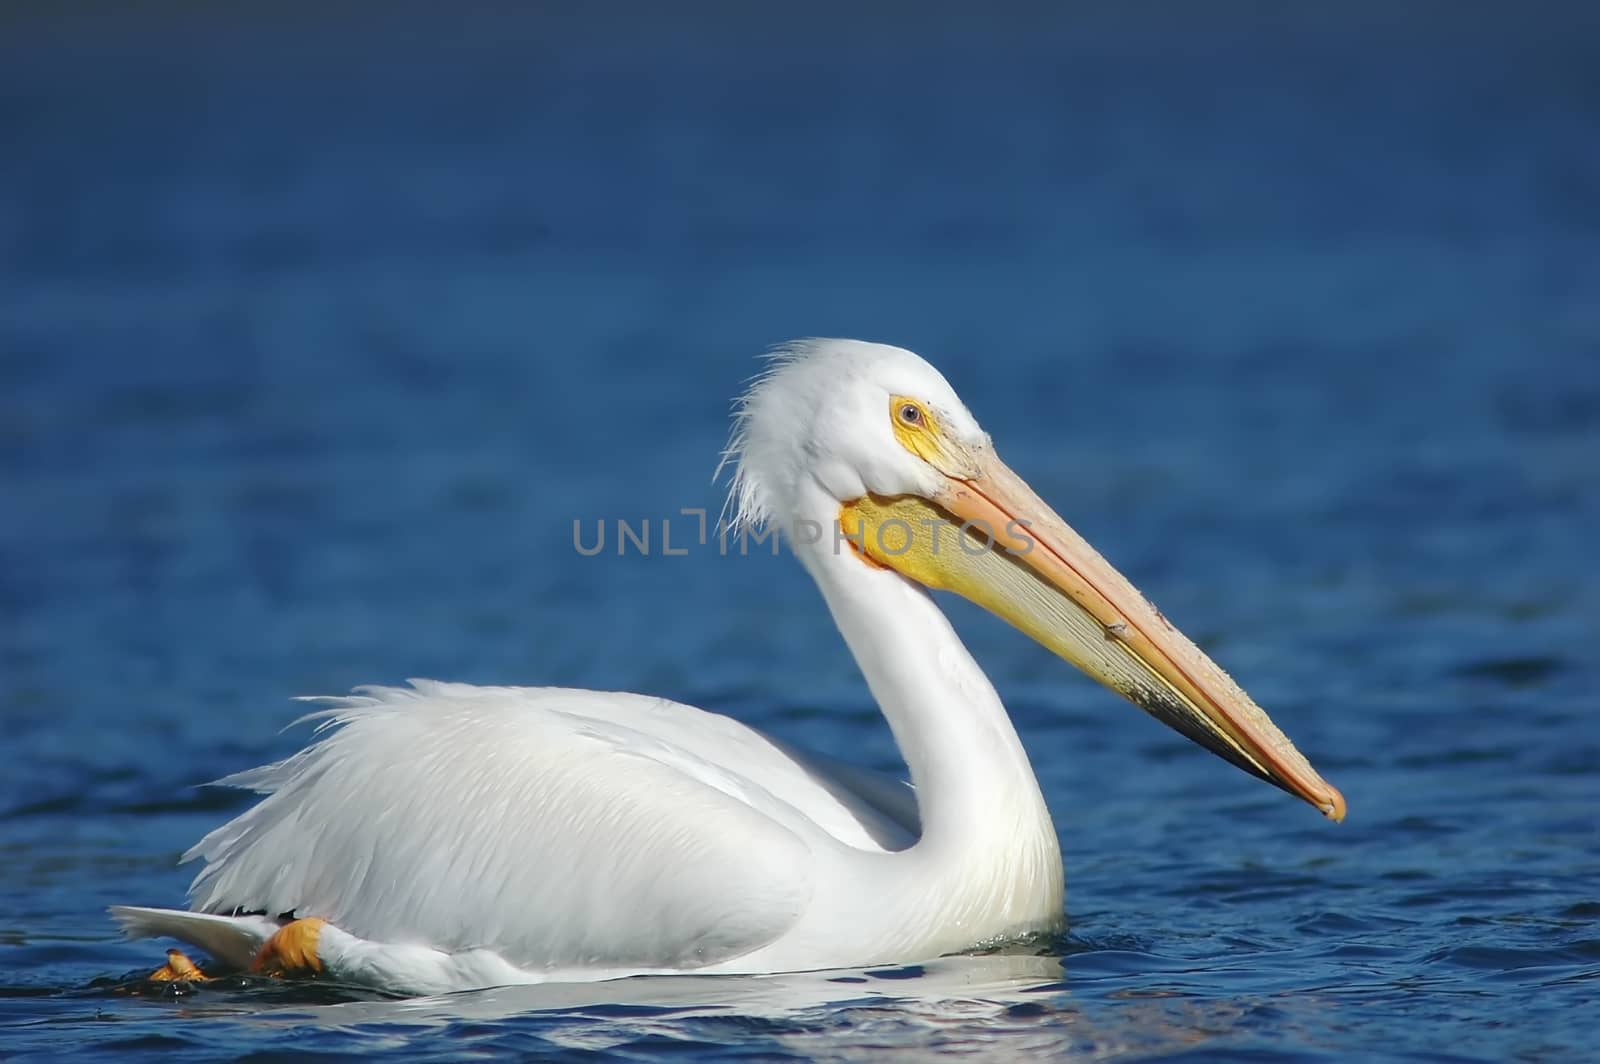 White Pelican (Pelecanus erythrorhynchos) by donya_nedomam